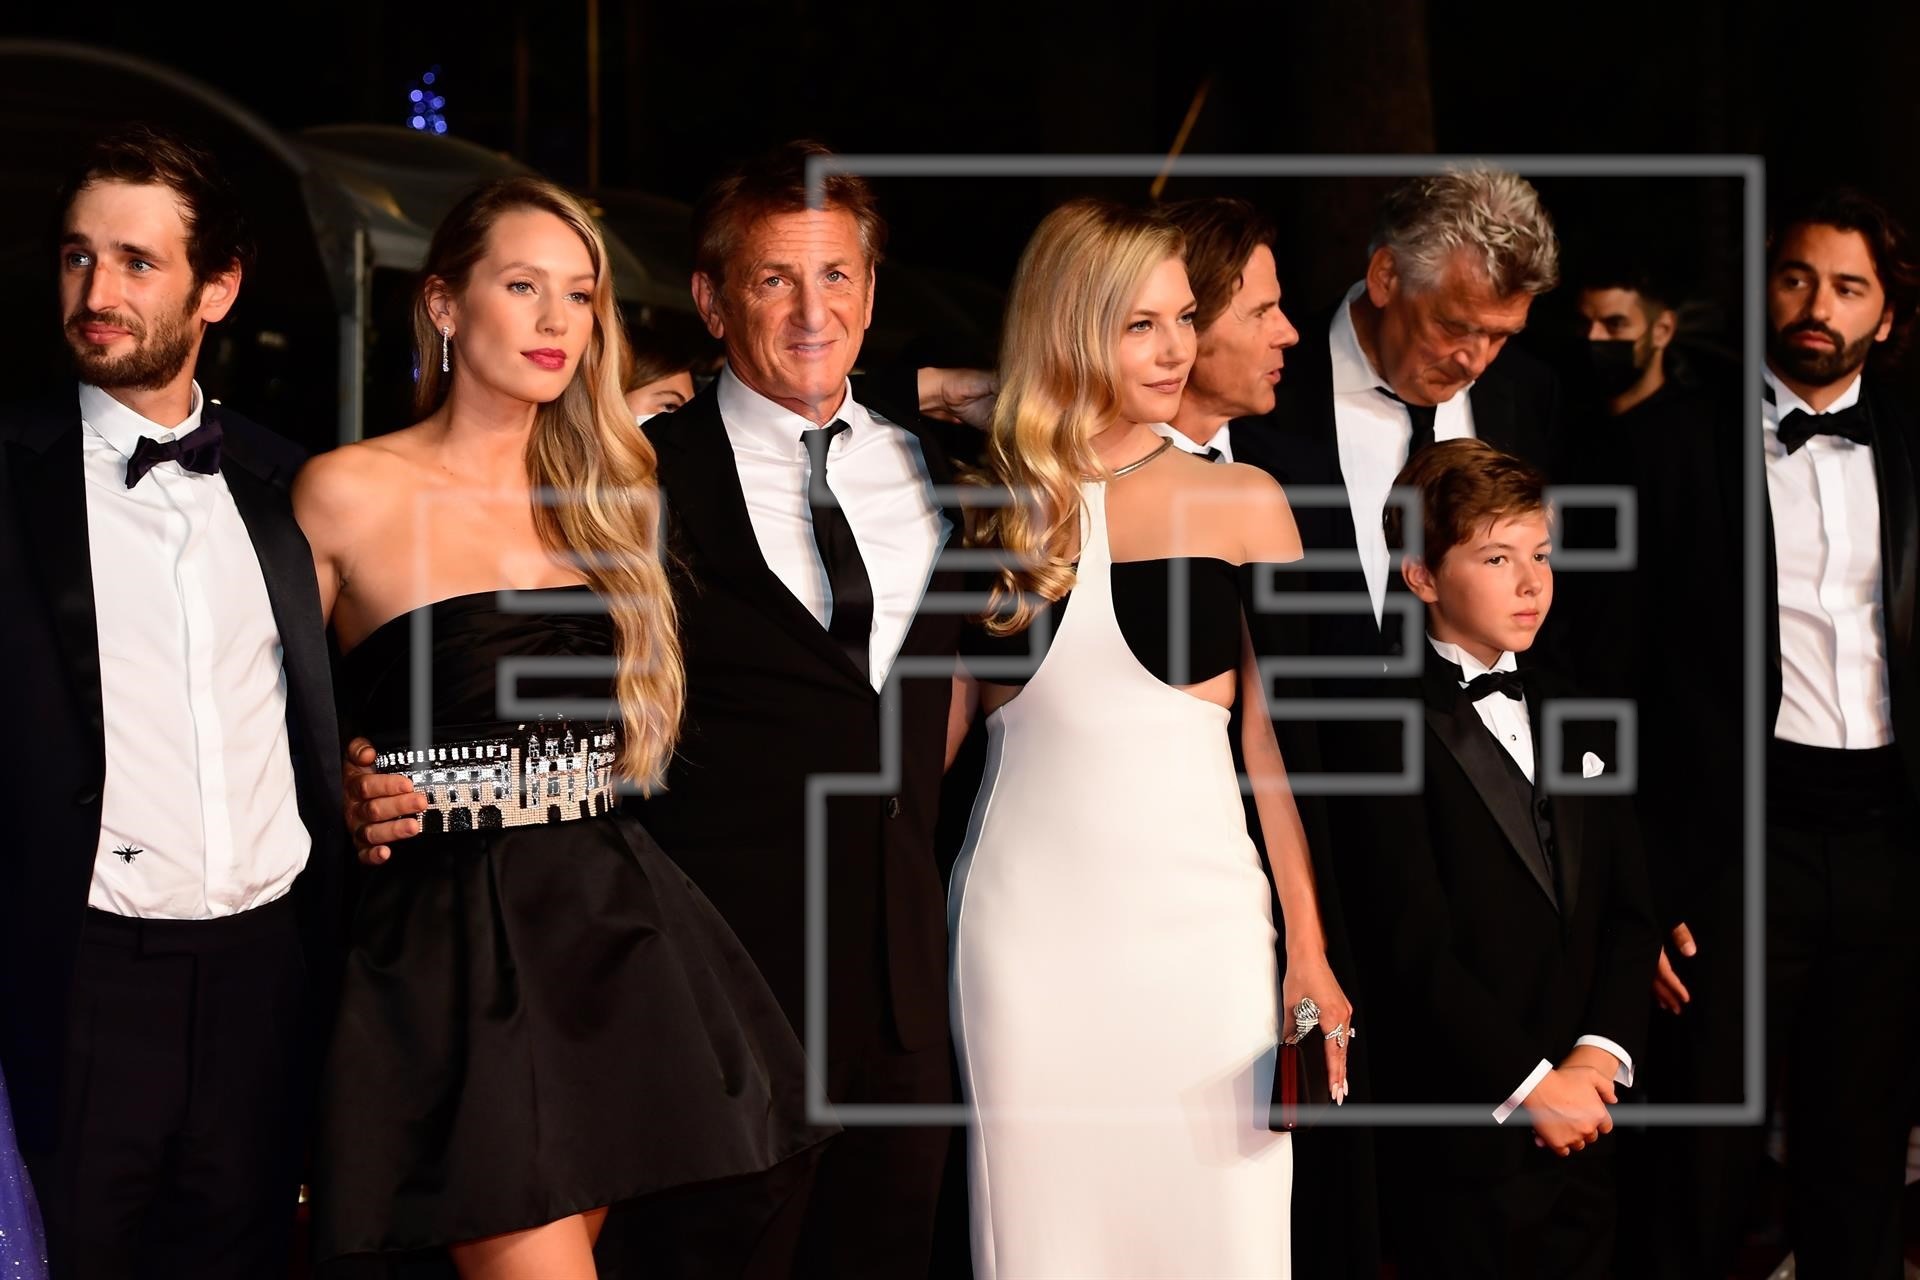 Sean Penn y su hija Dylan impactaron en blanco y negro en la alfombra roja del Festival de Cannes